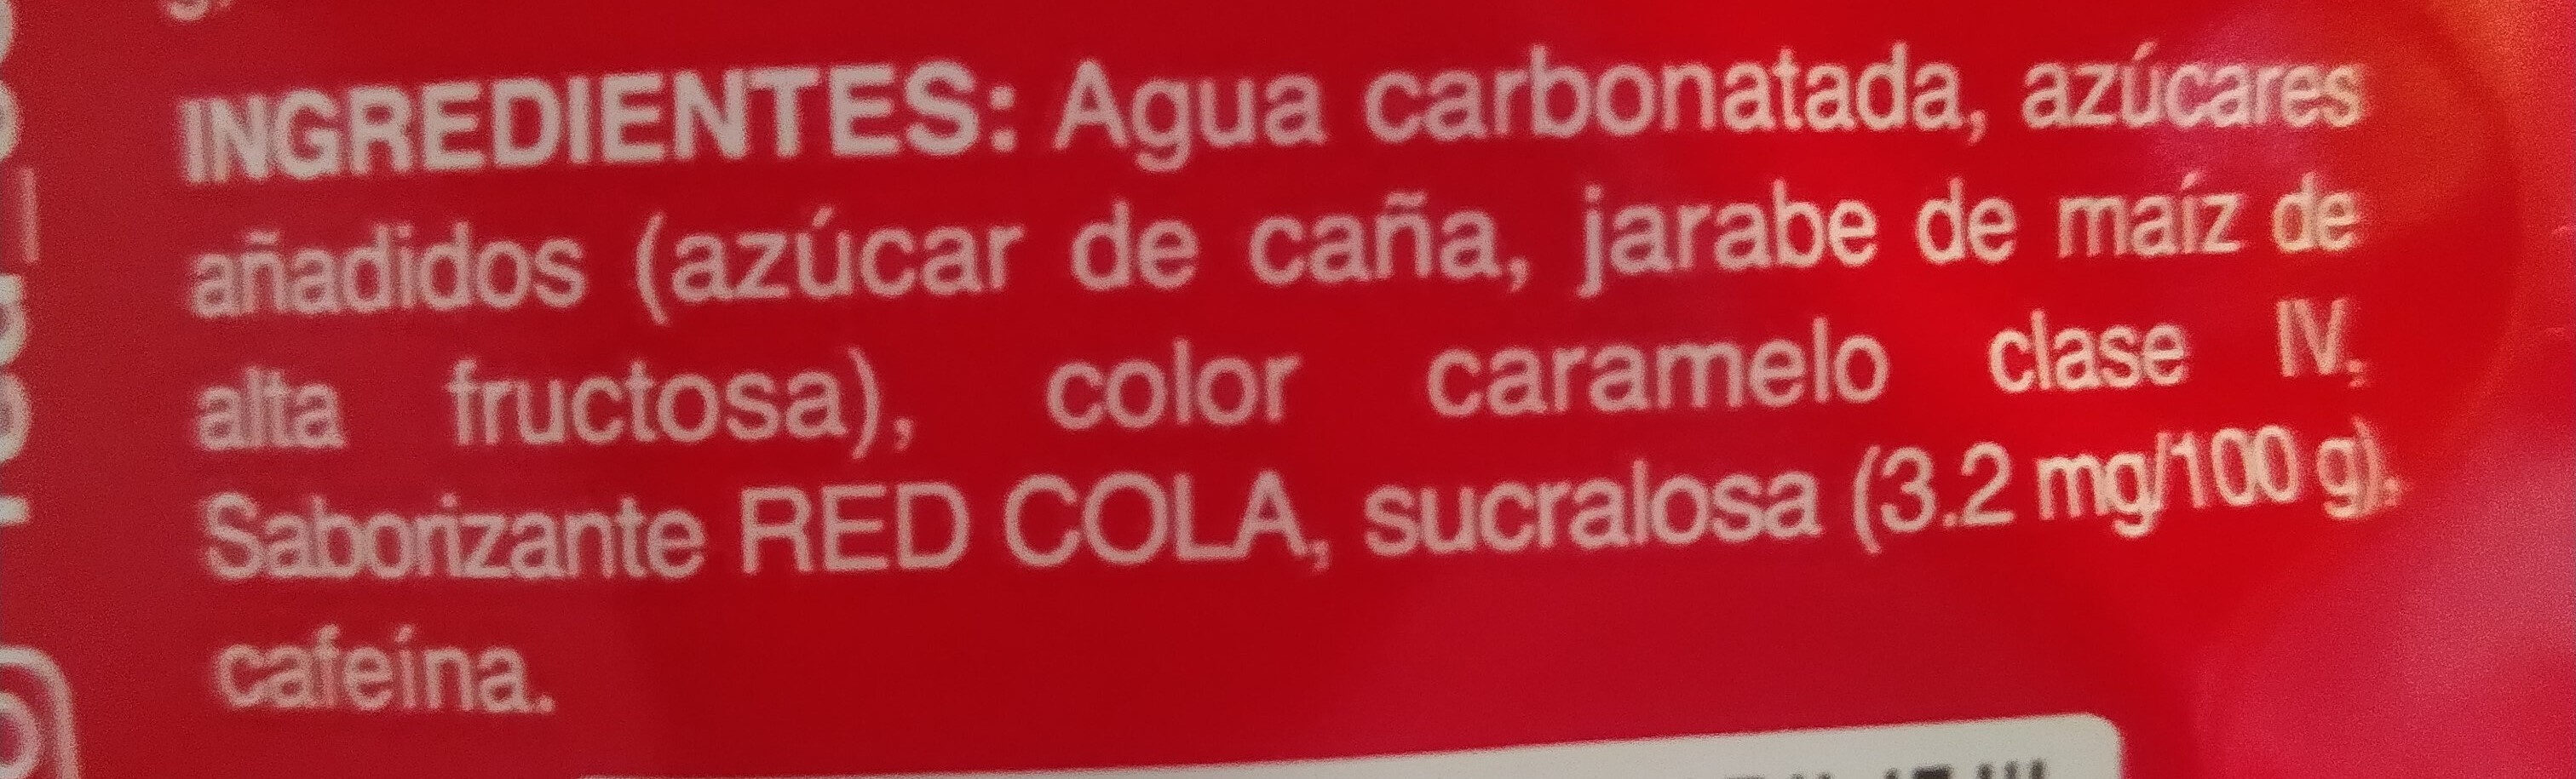 Red Cola - Ingredients - es